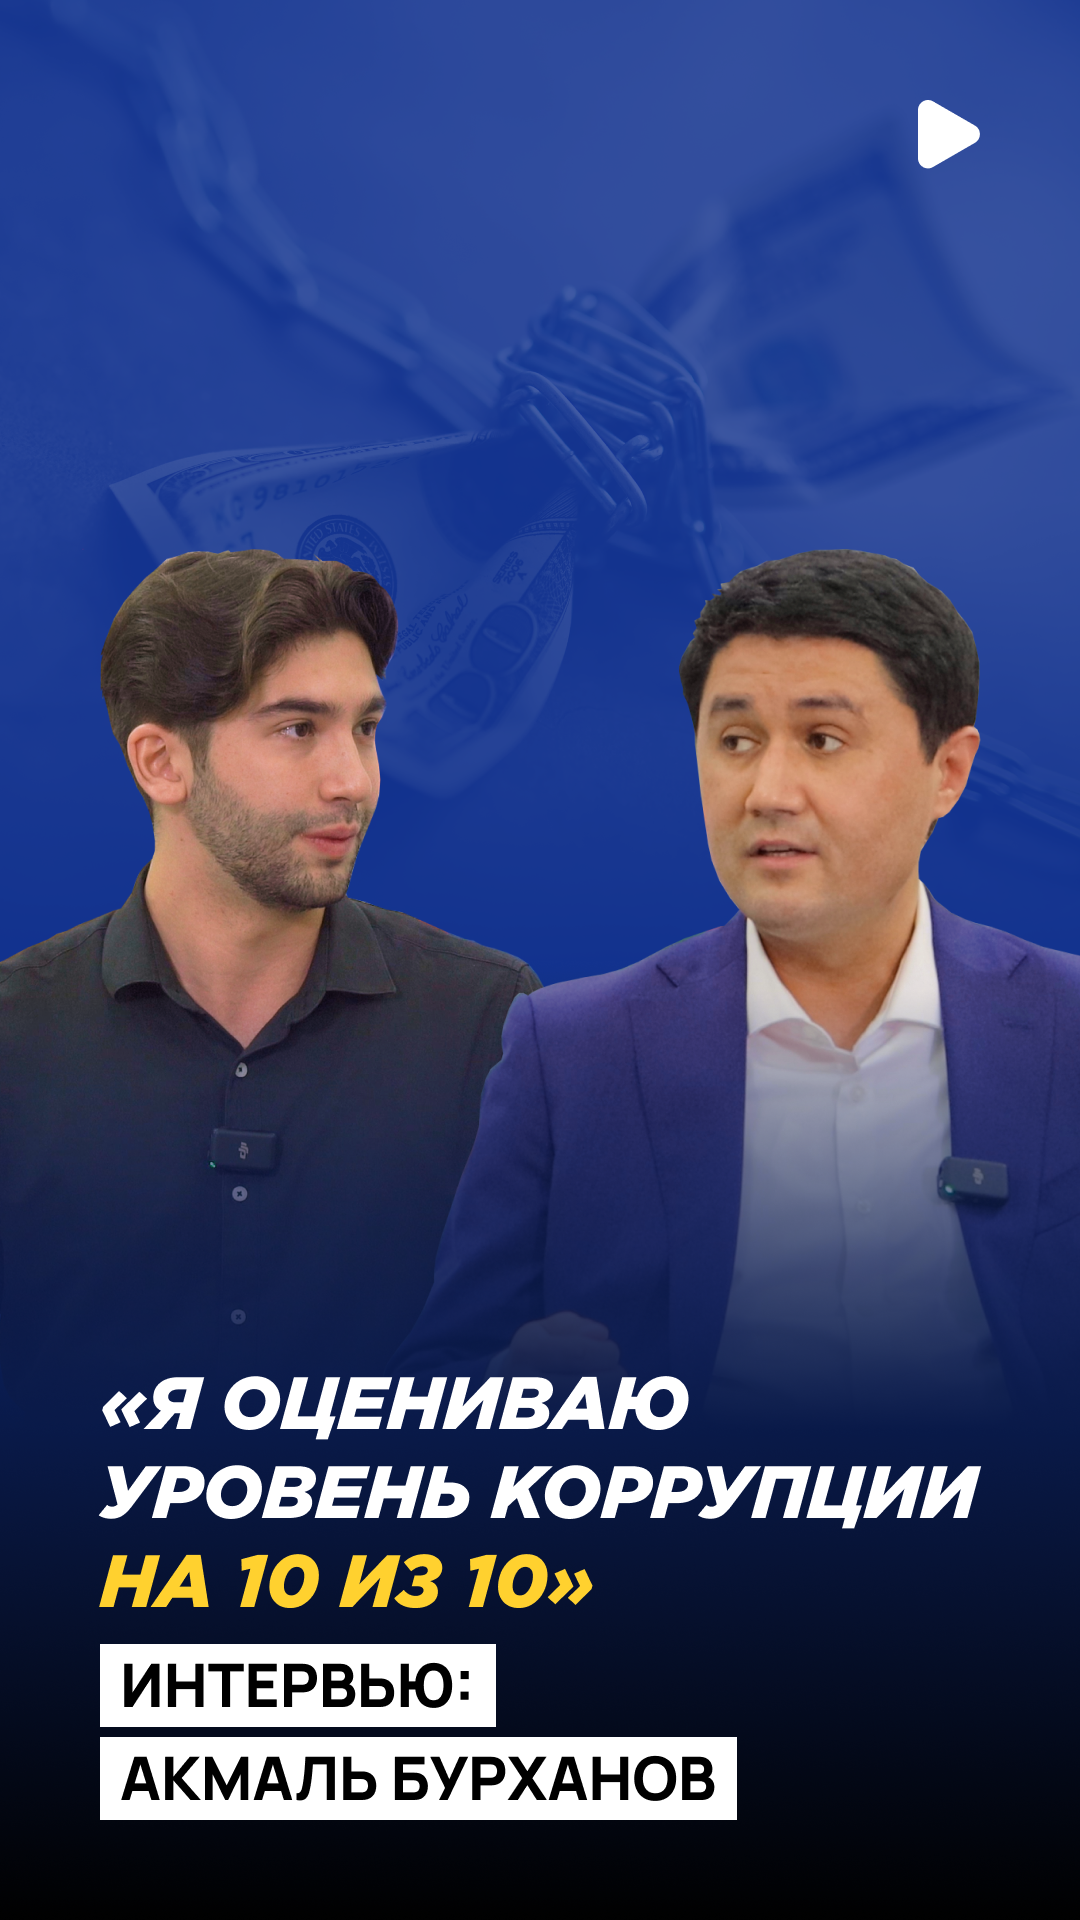 Директор Агентства по противодействию коррупции Узбекистана Акмаль Бурханов дал большое интервью изданию Repost